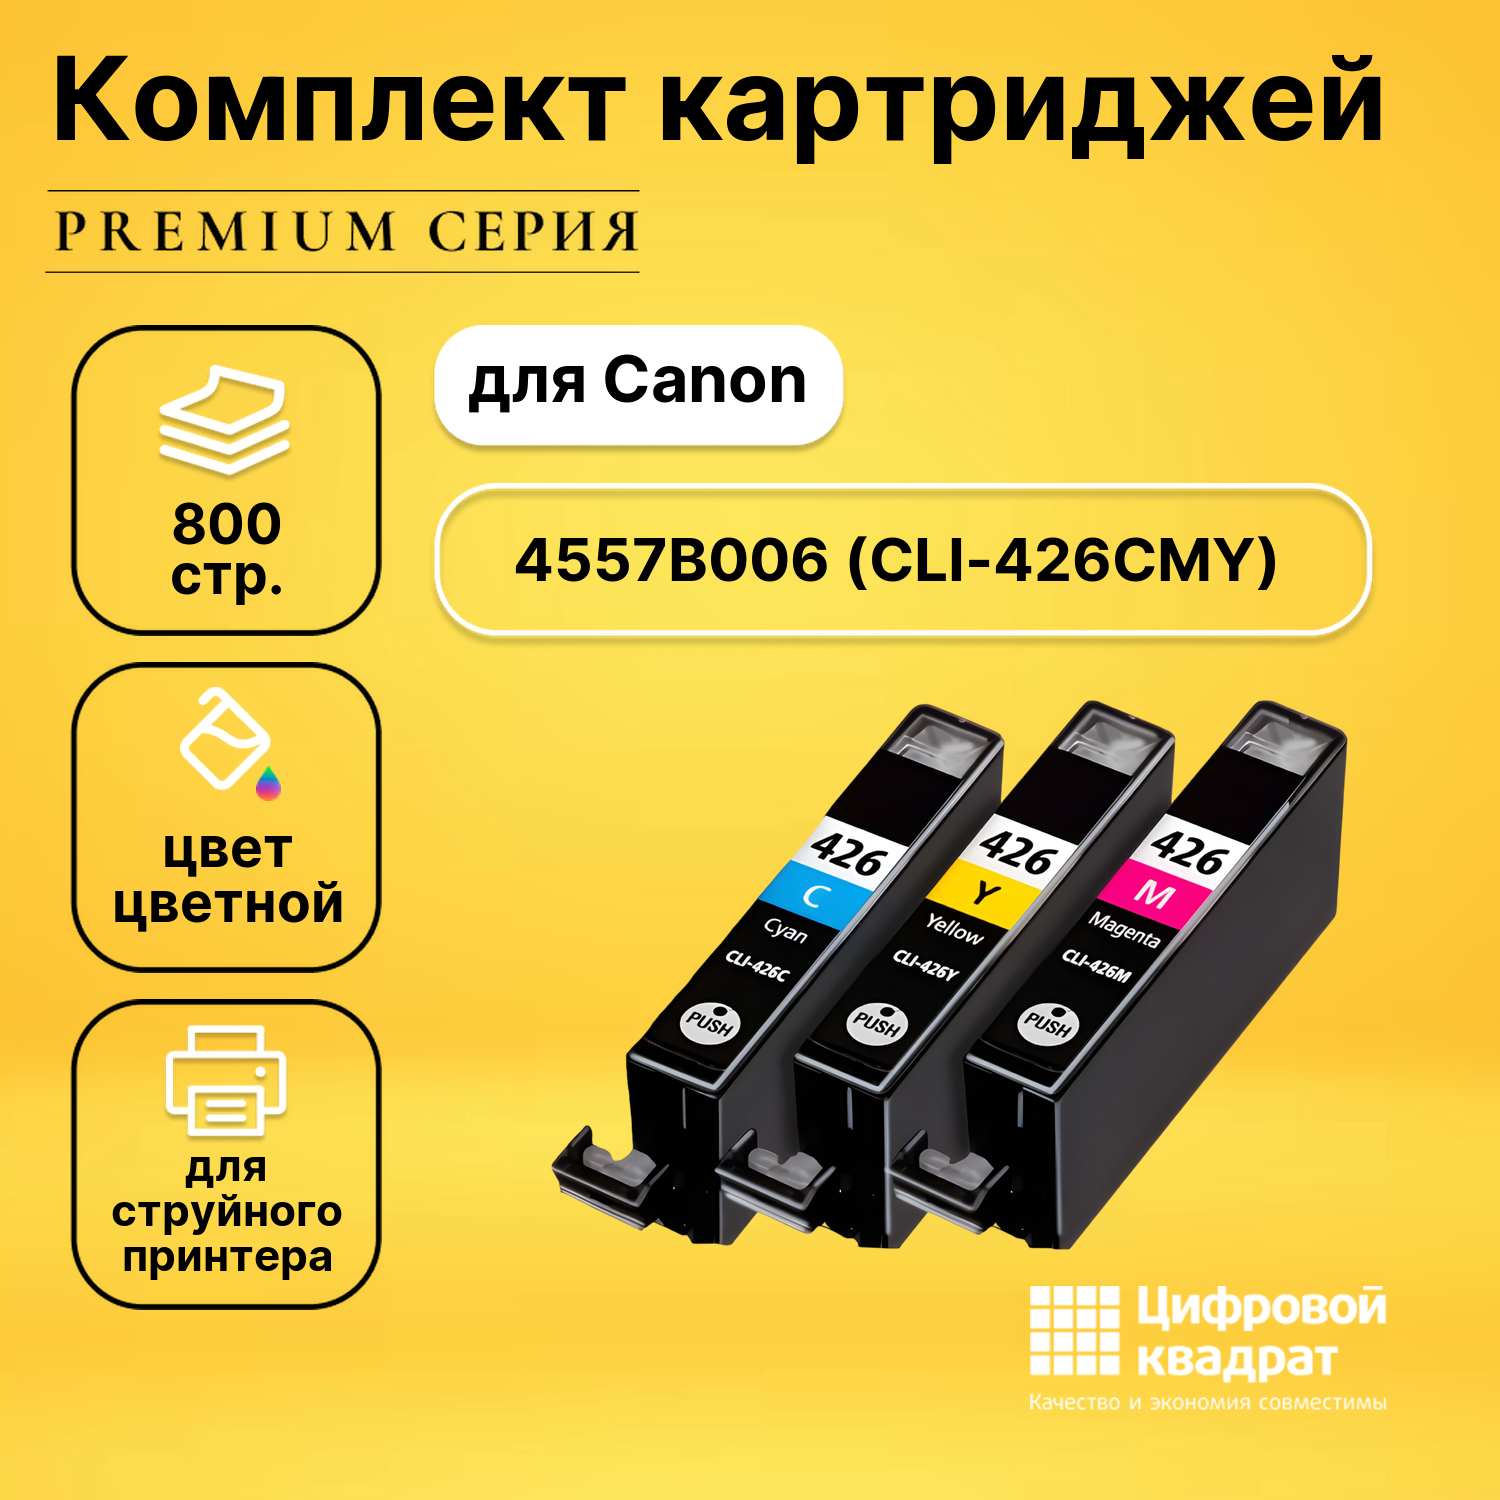 Набор картриджей DS CLI-426 Canon 4557B006 цветной совместимый